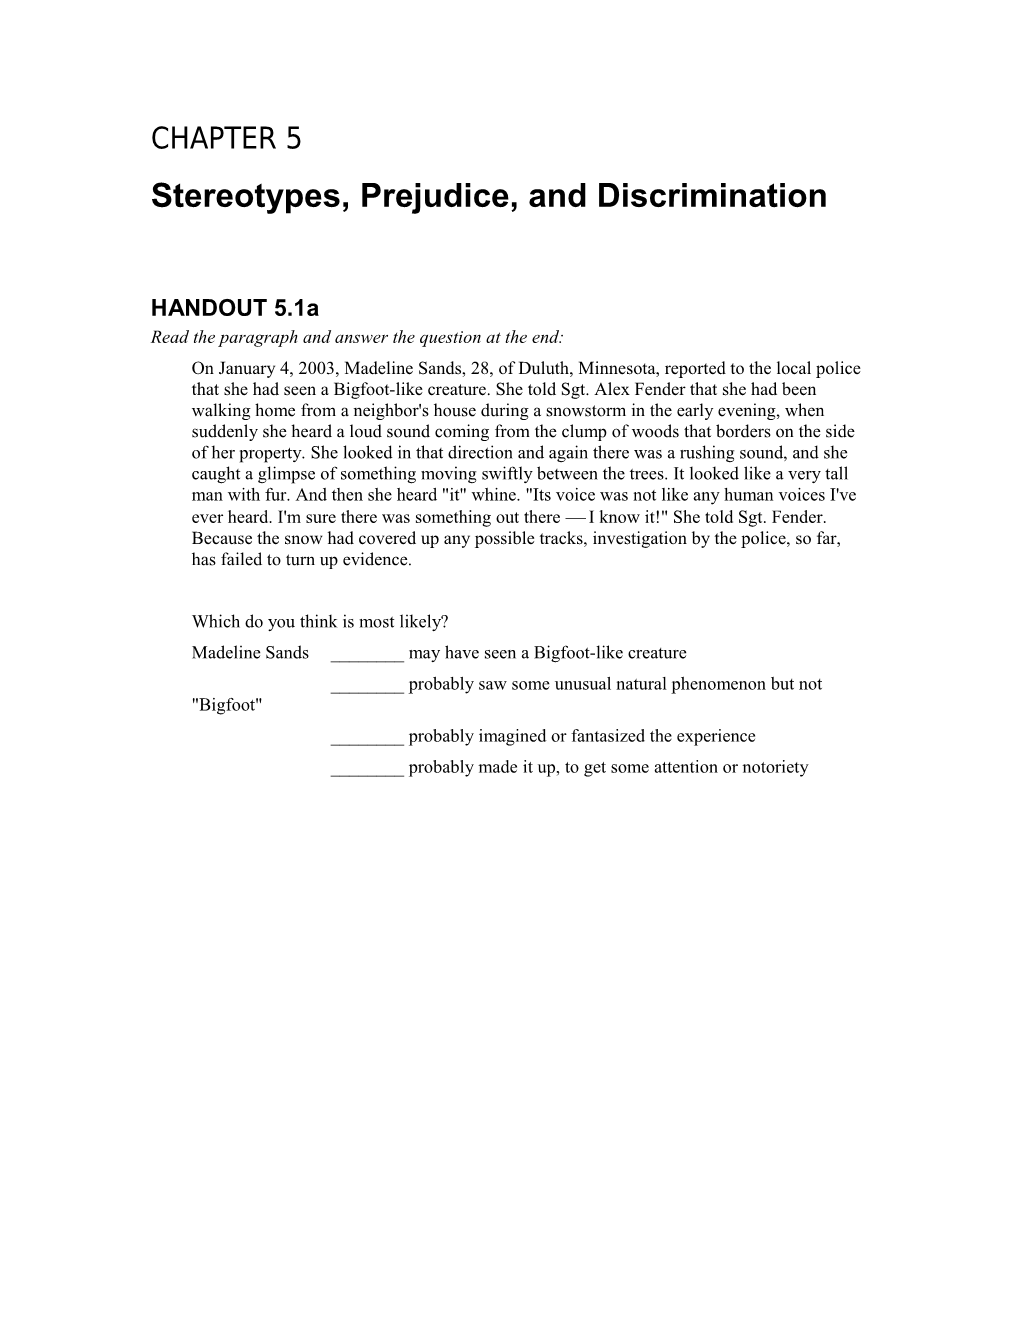 Stereotypes, Prejudice, and Discrimination